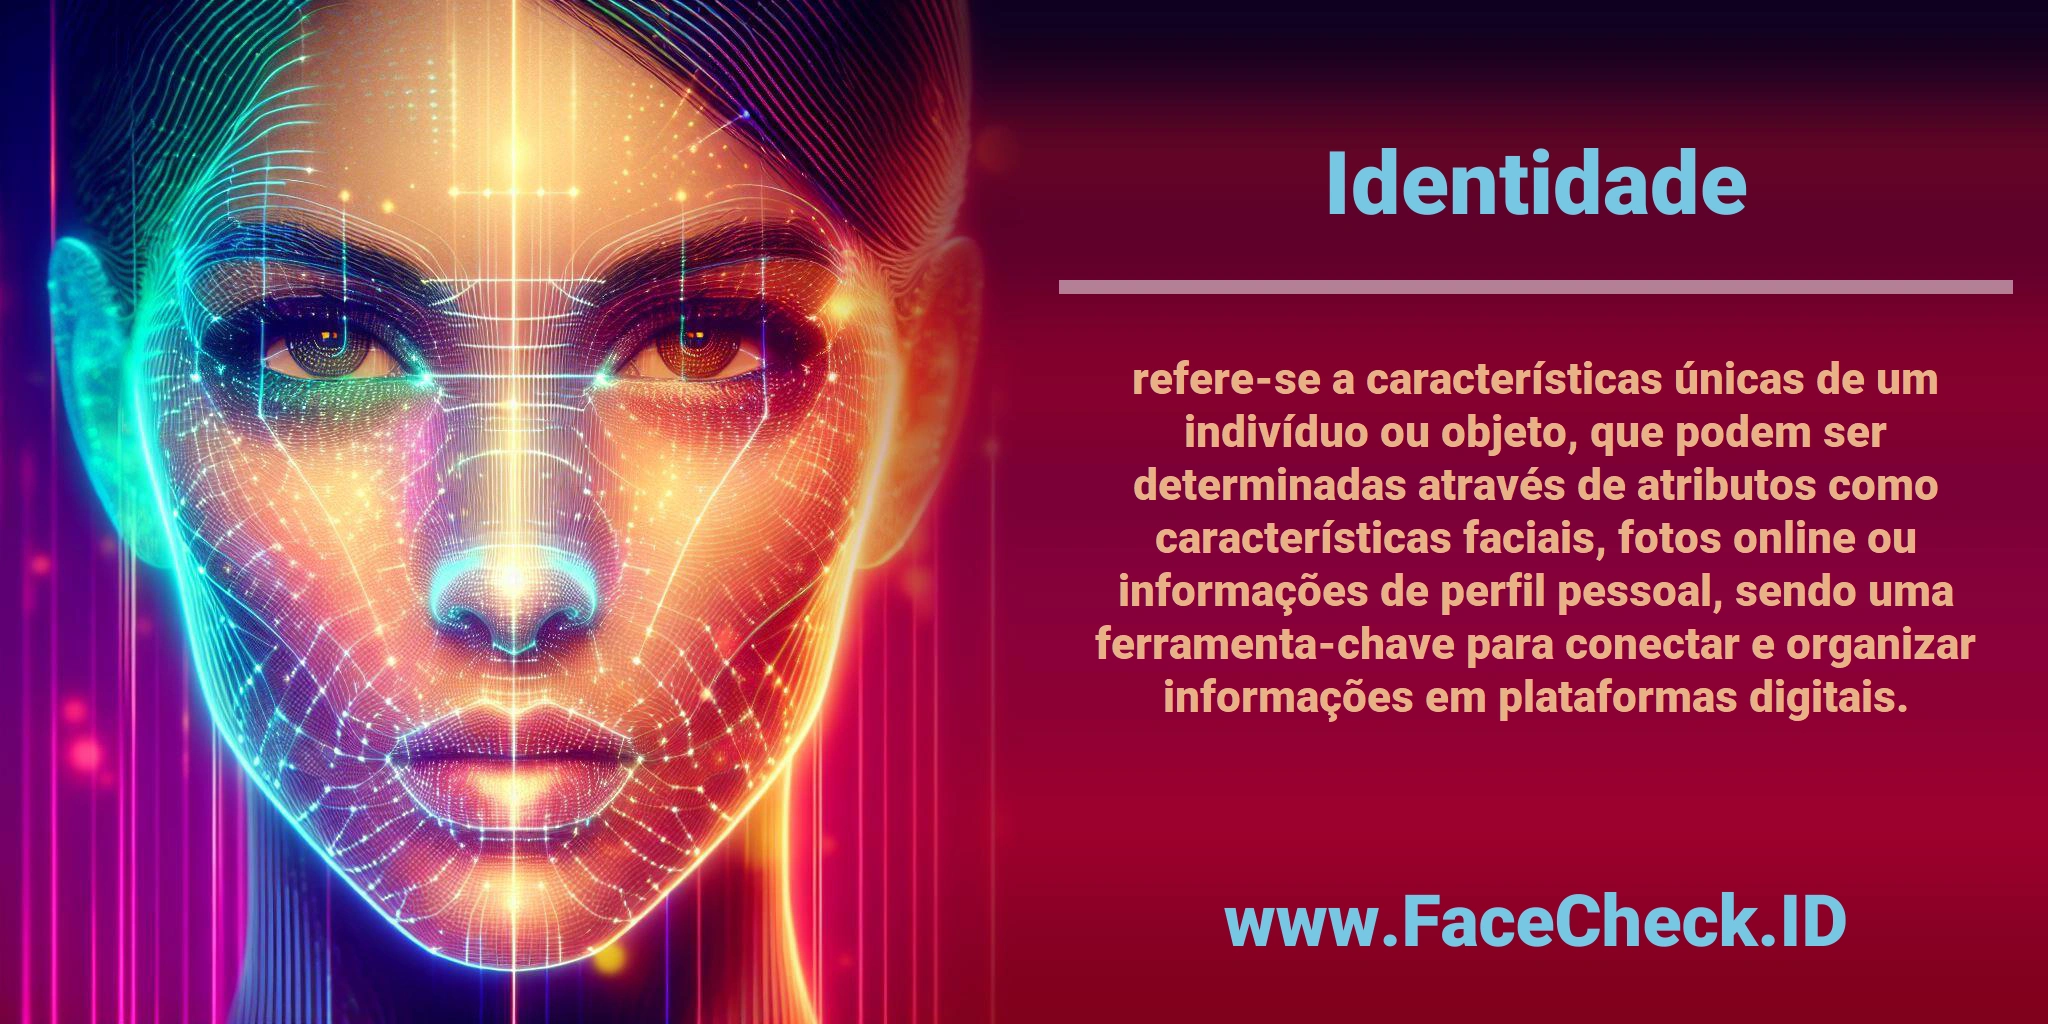 FaceCheck ID é seguro? Veja como funciona e se você deve usar